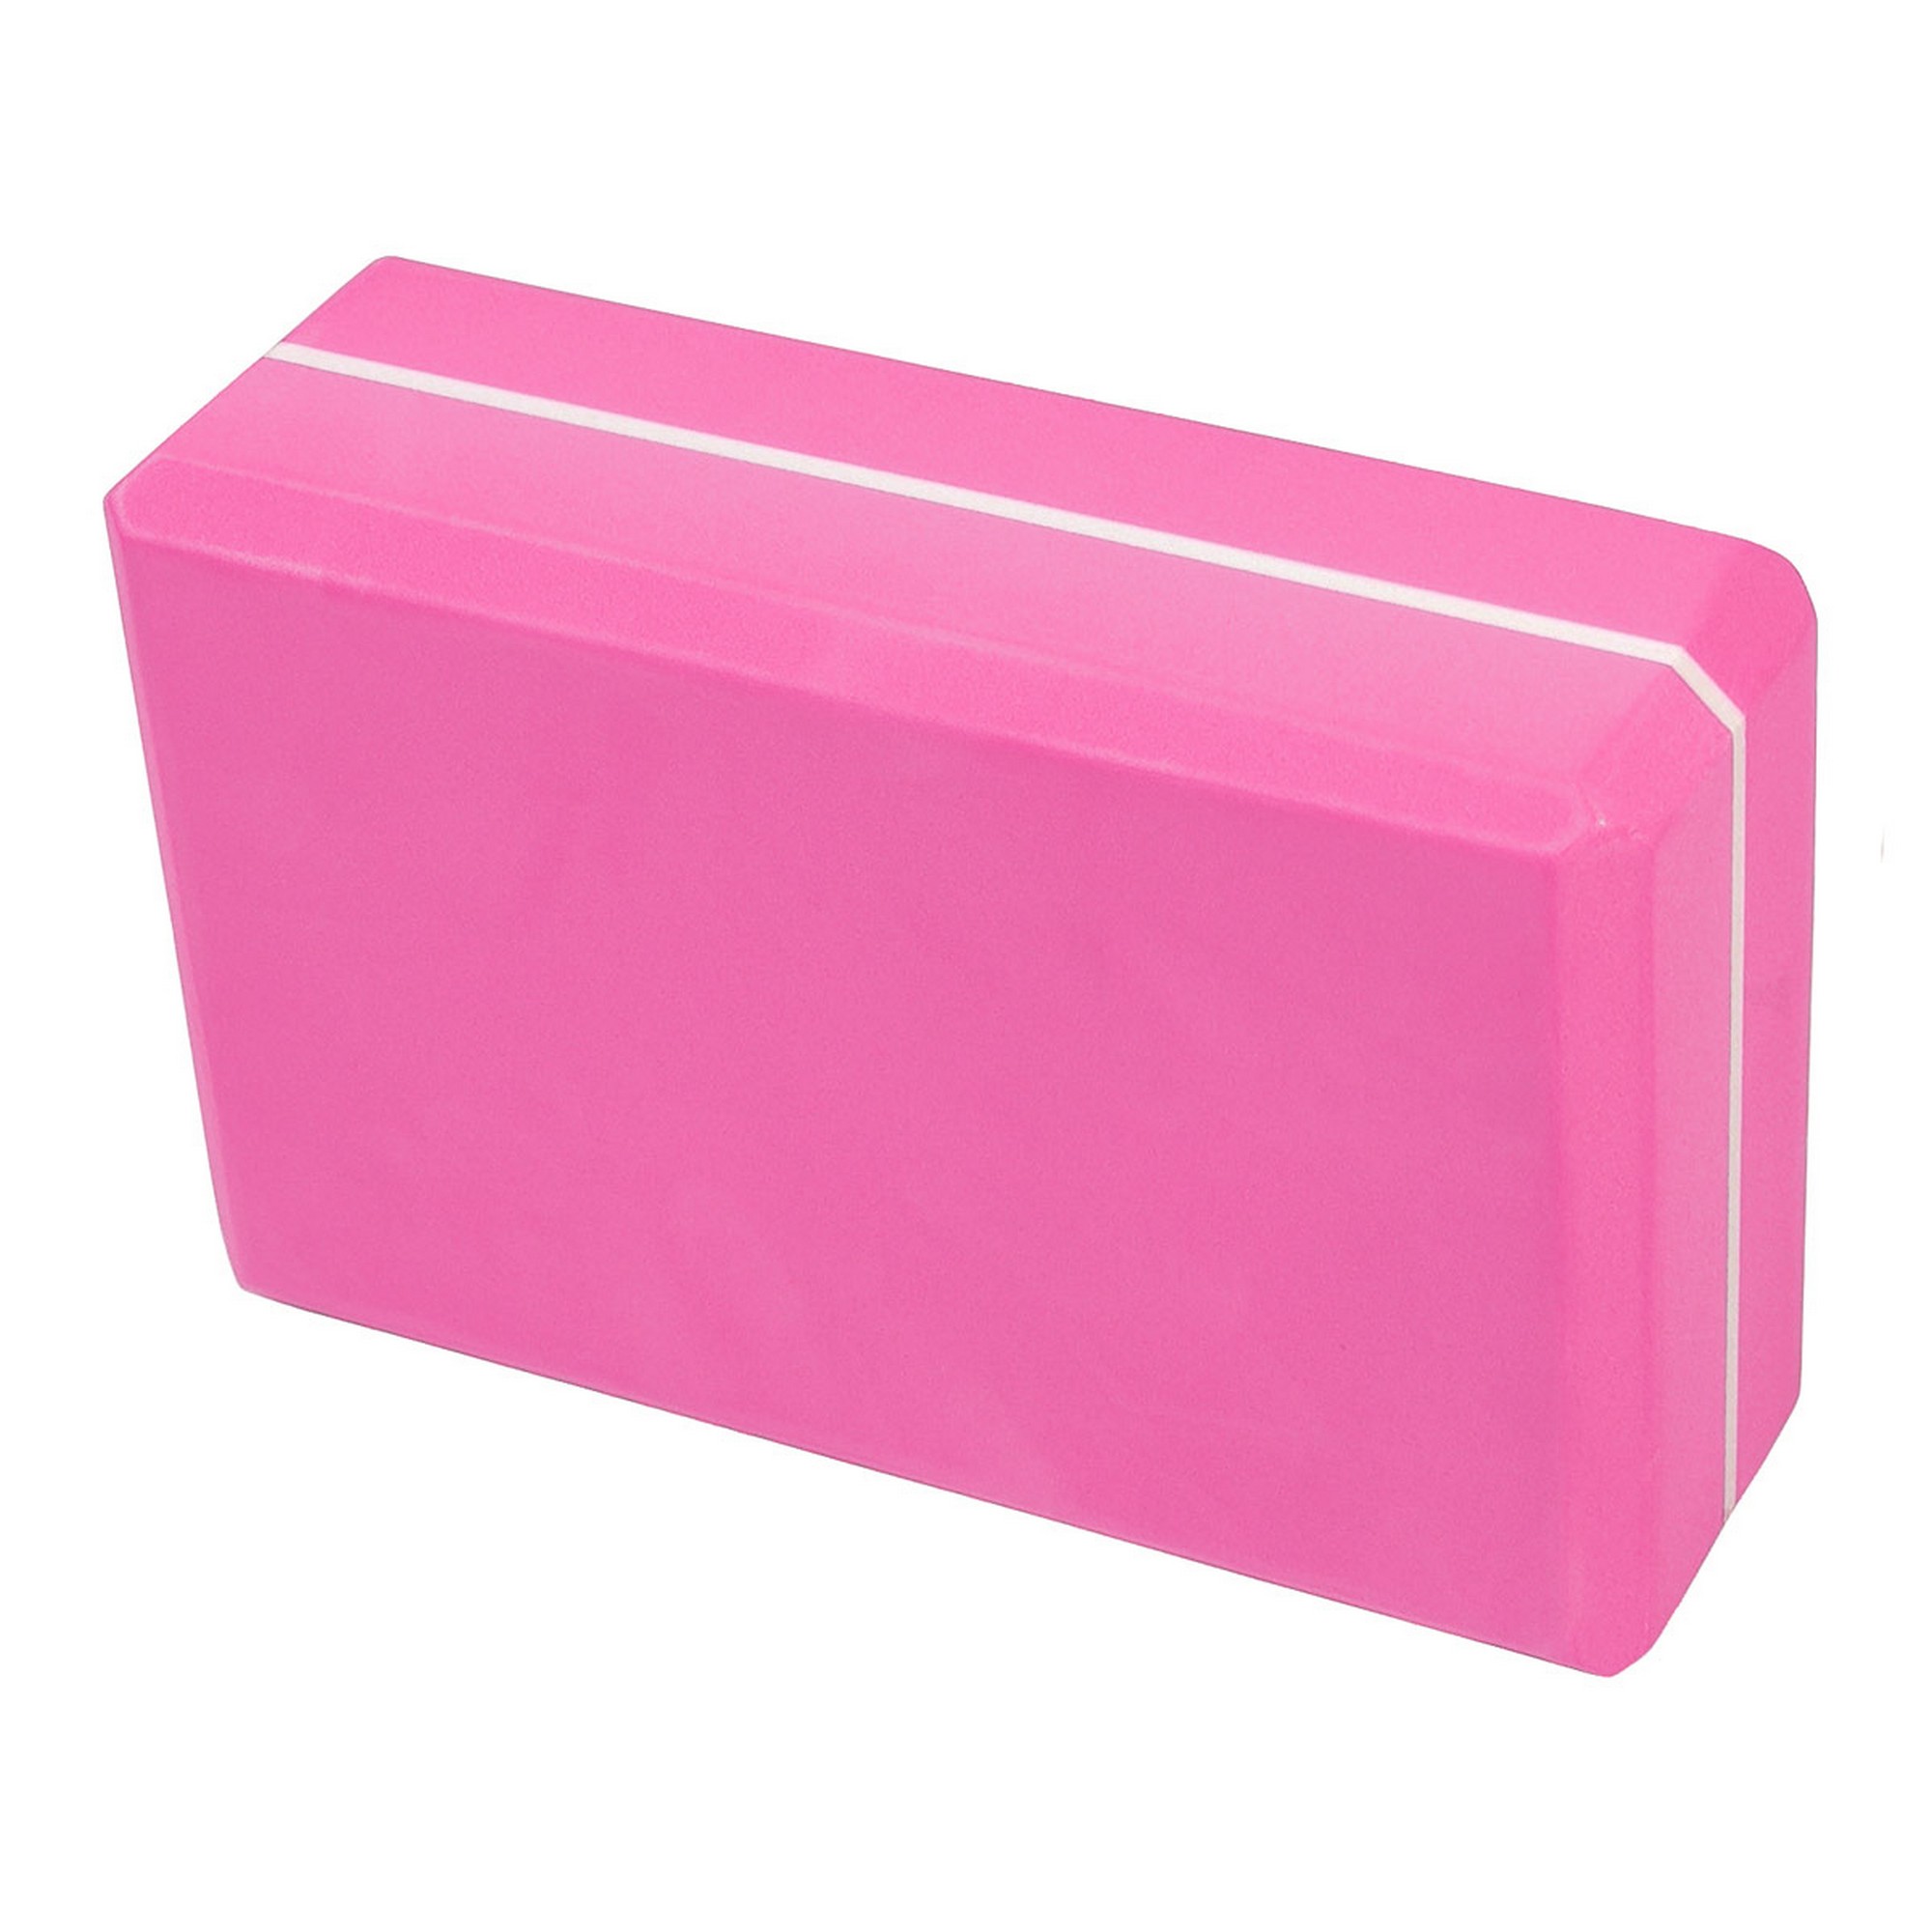 Йога блок Sportex полумягкий, из вспененного ЭВА 22,3х15х7,6 см E39131-7 розовый